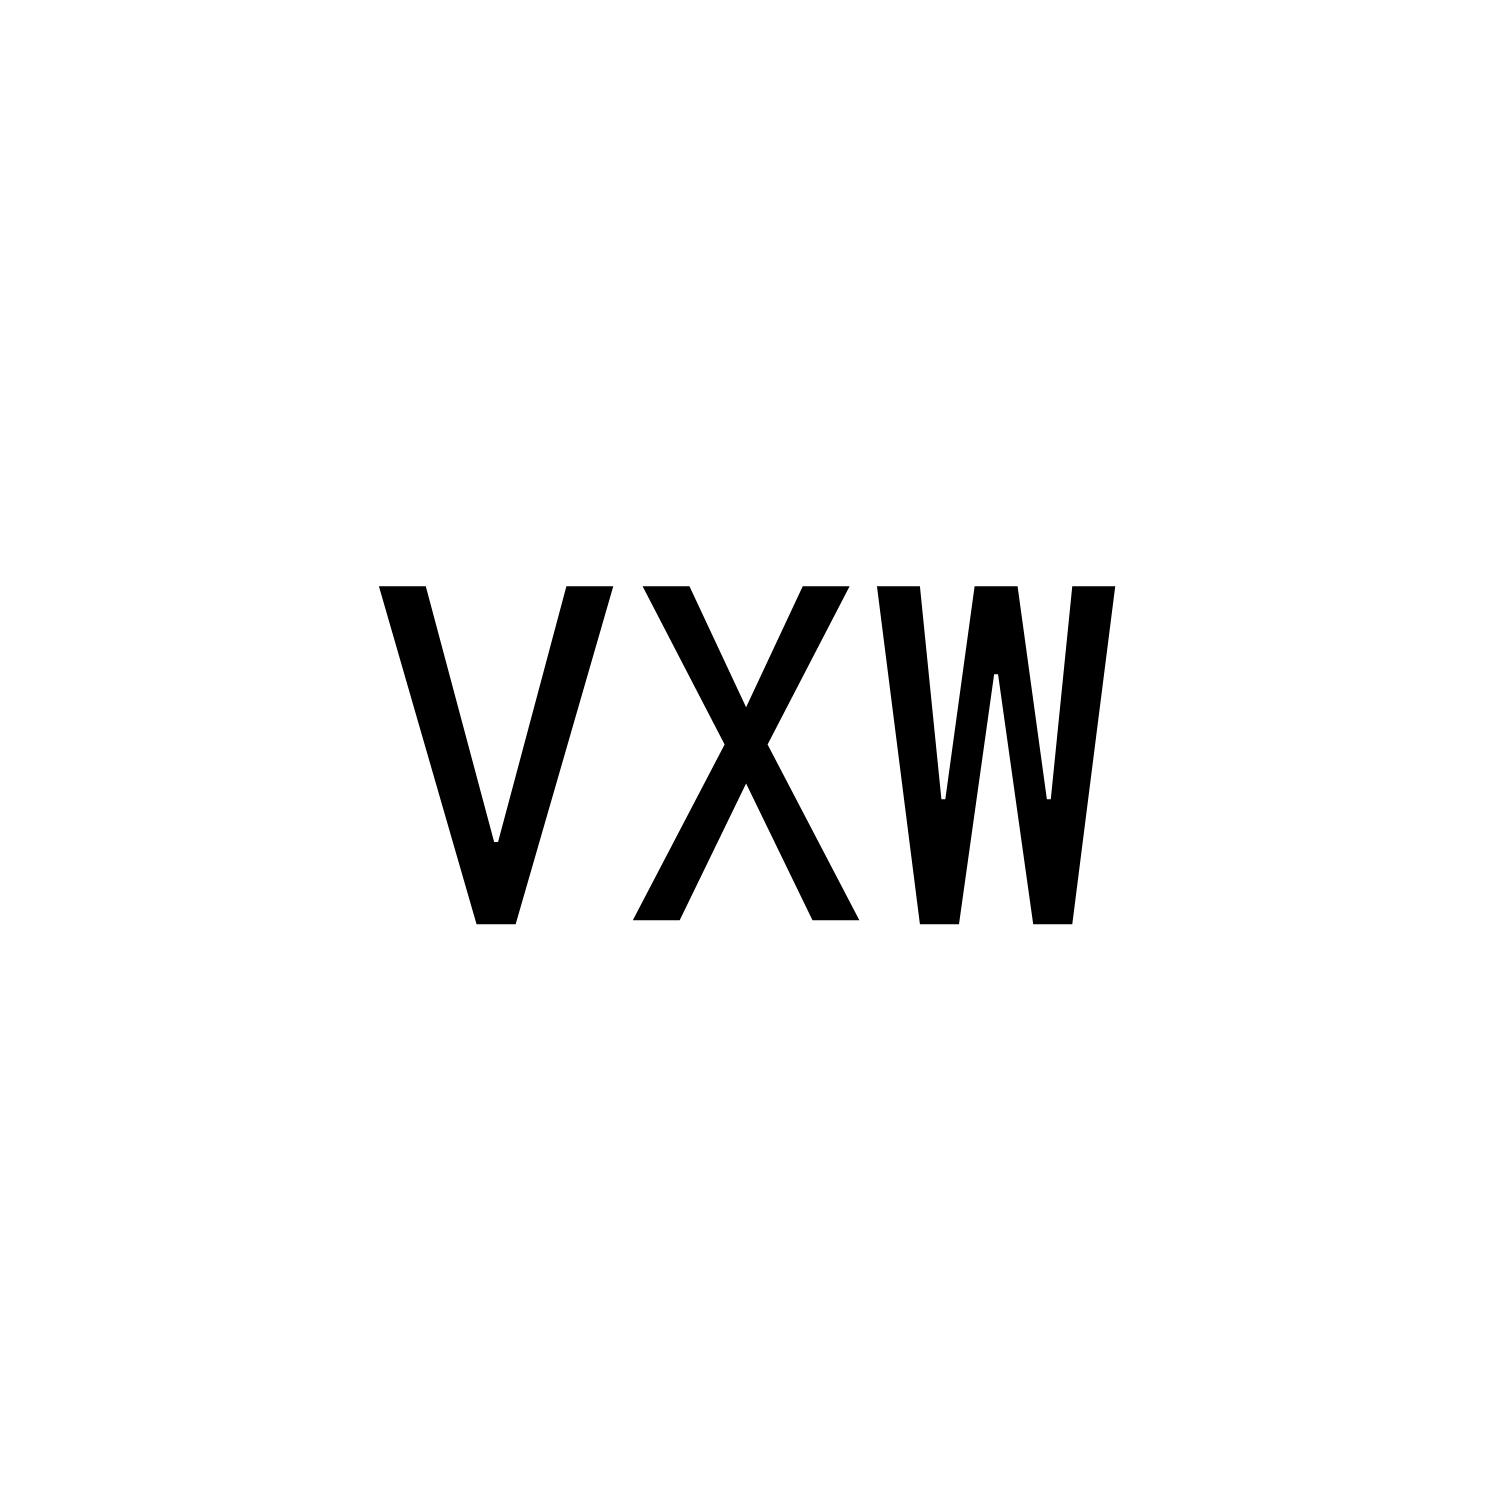 VXW